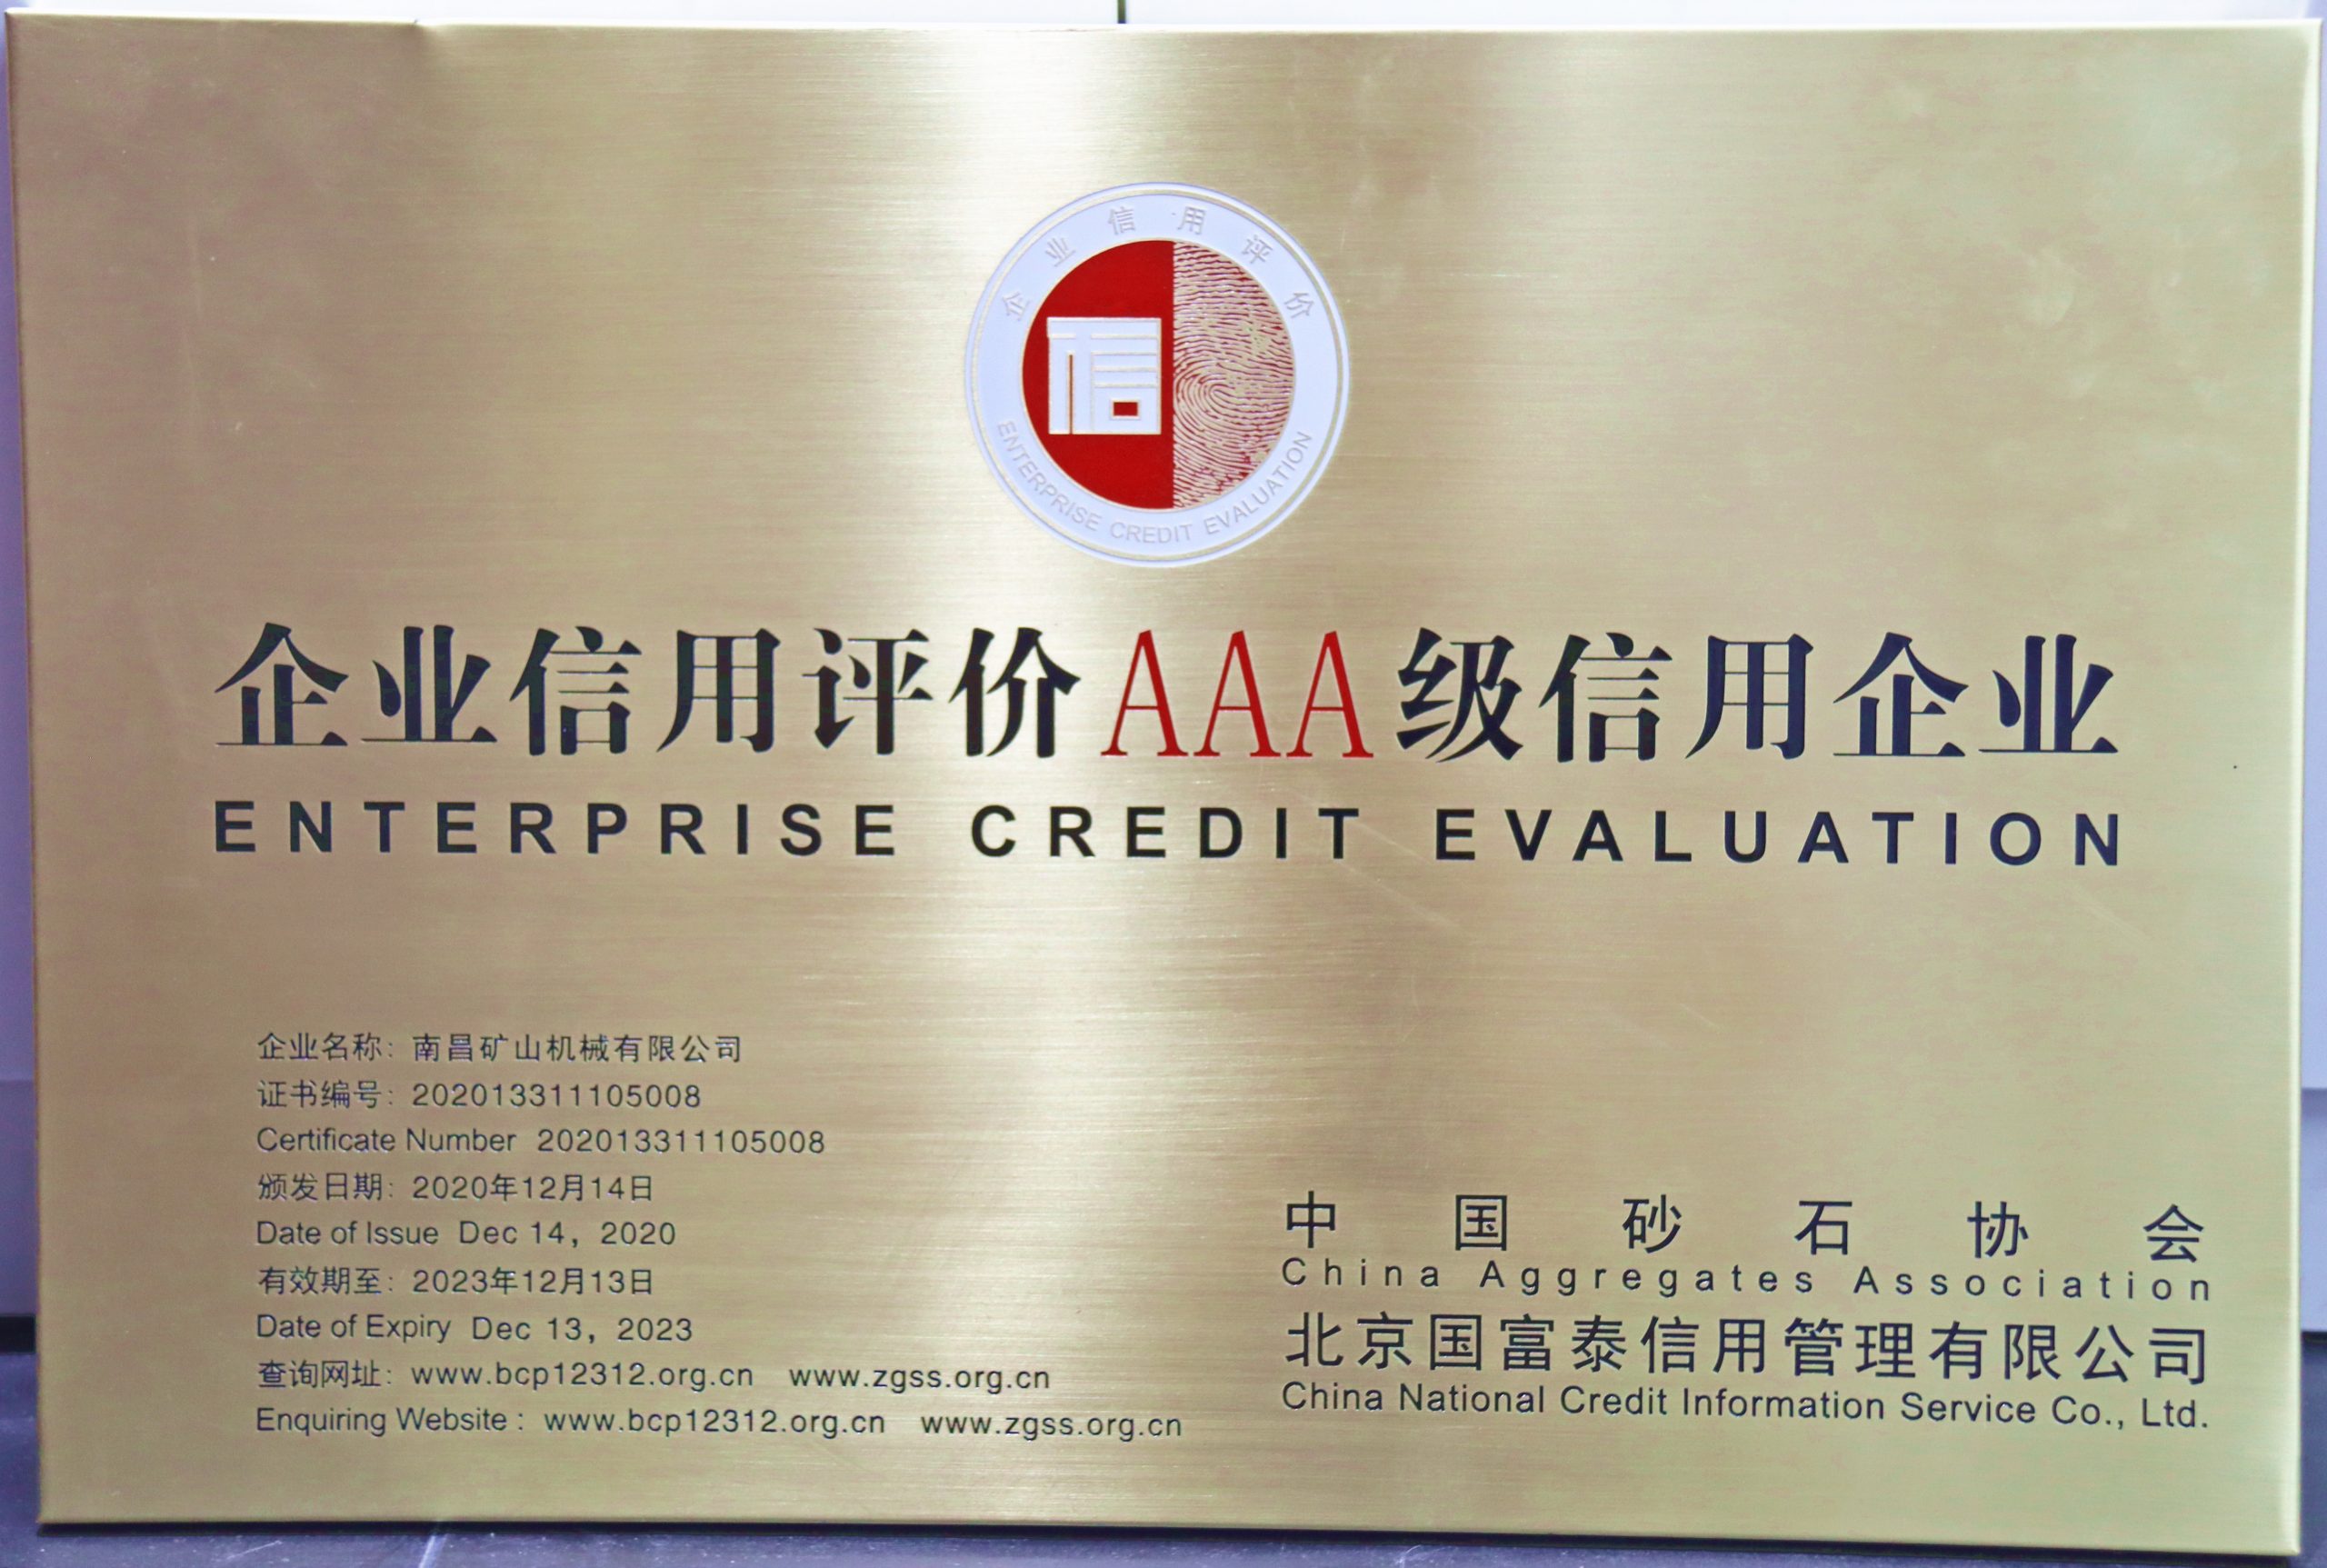 中国砂石协会企业信用评价AAA级信用企业